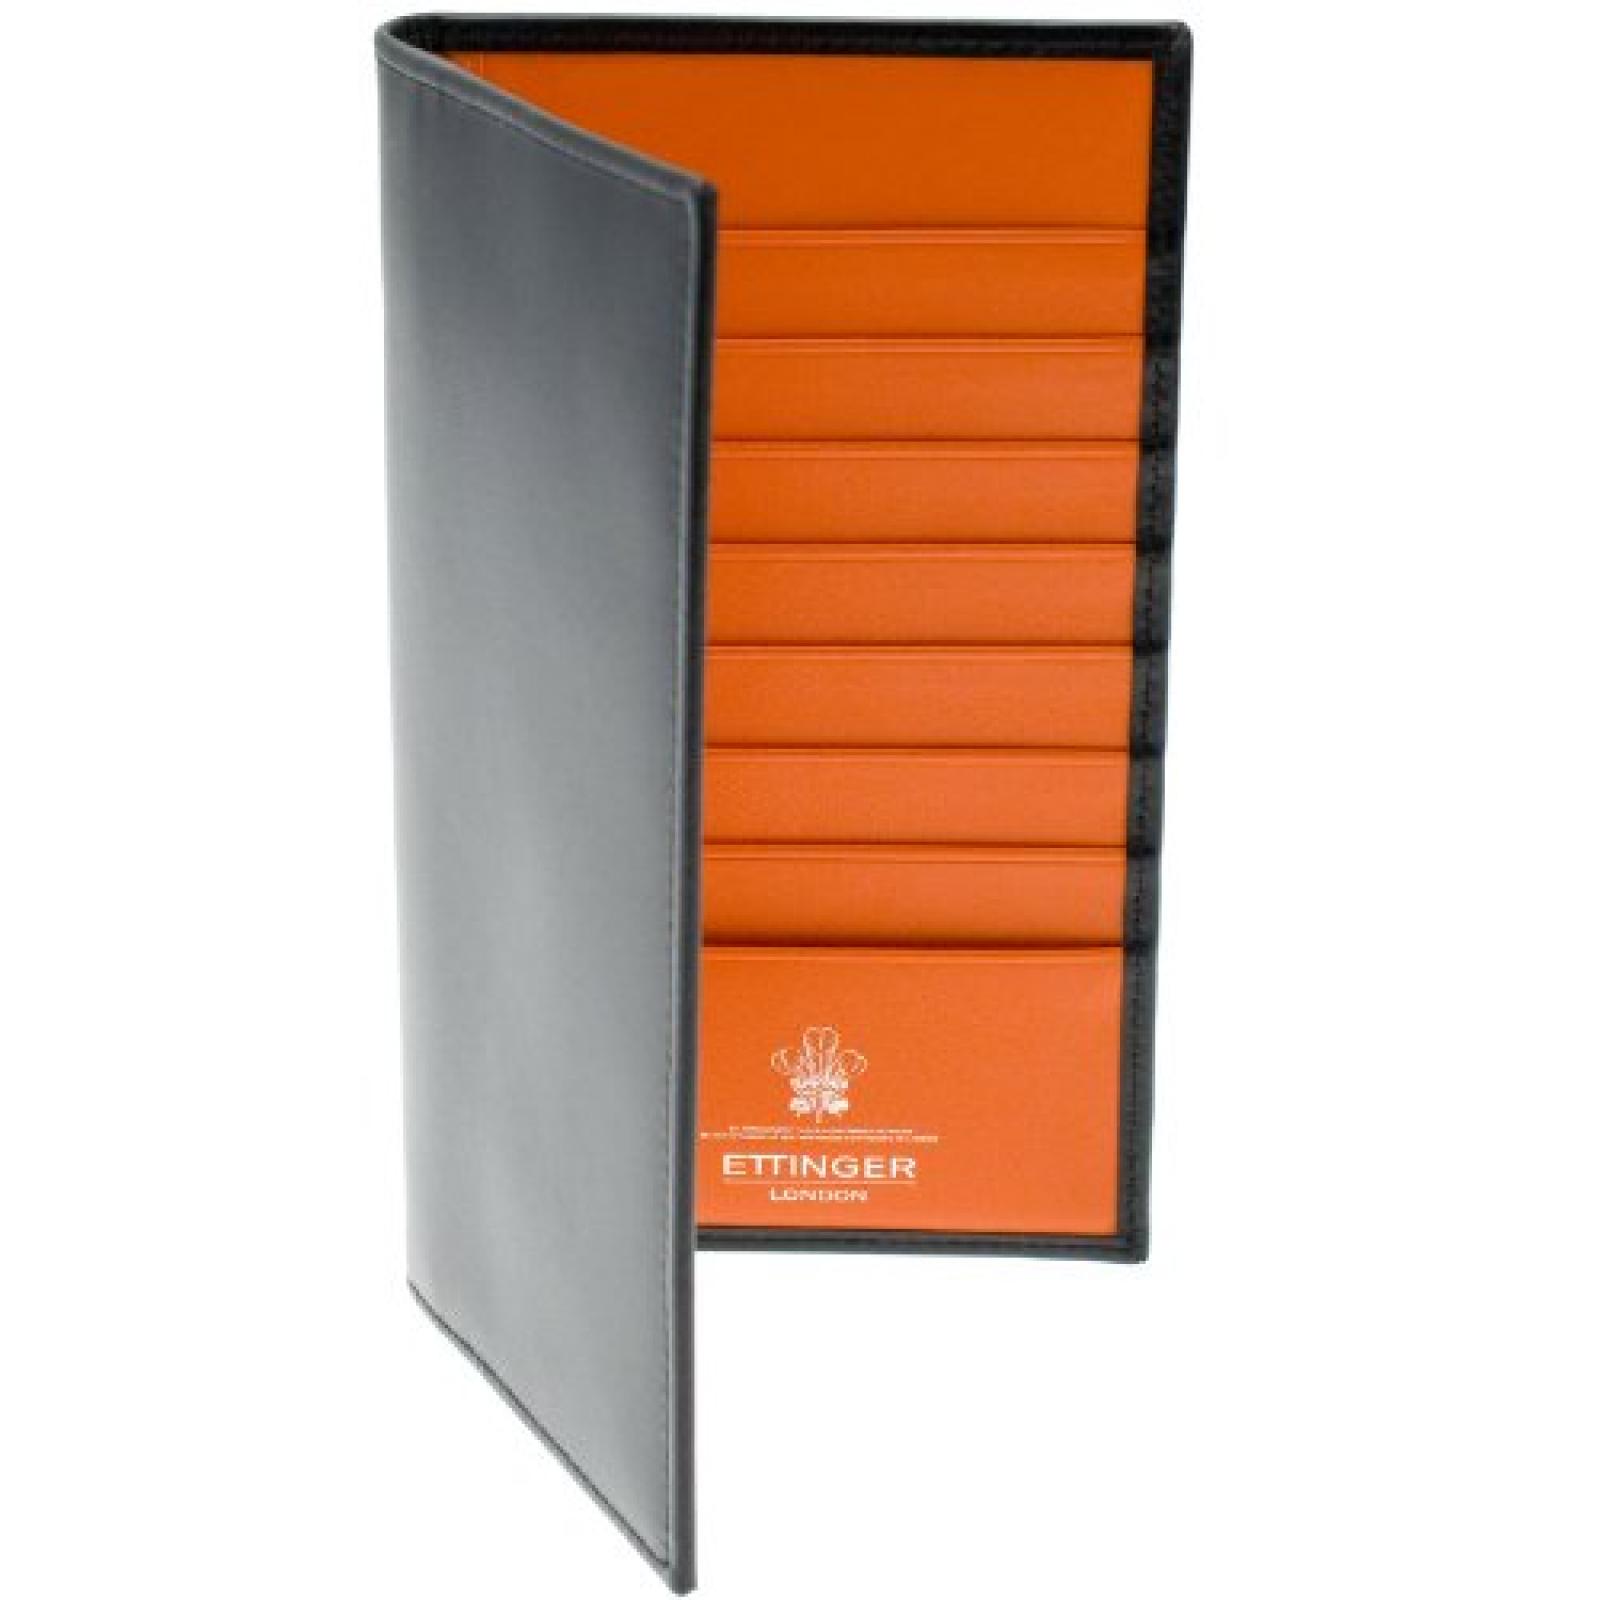 Ettinger Sterling Collection - Brieftasche aus Leder - Schwarz / Orange innen 